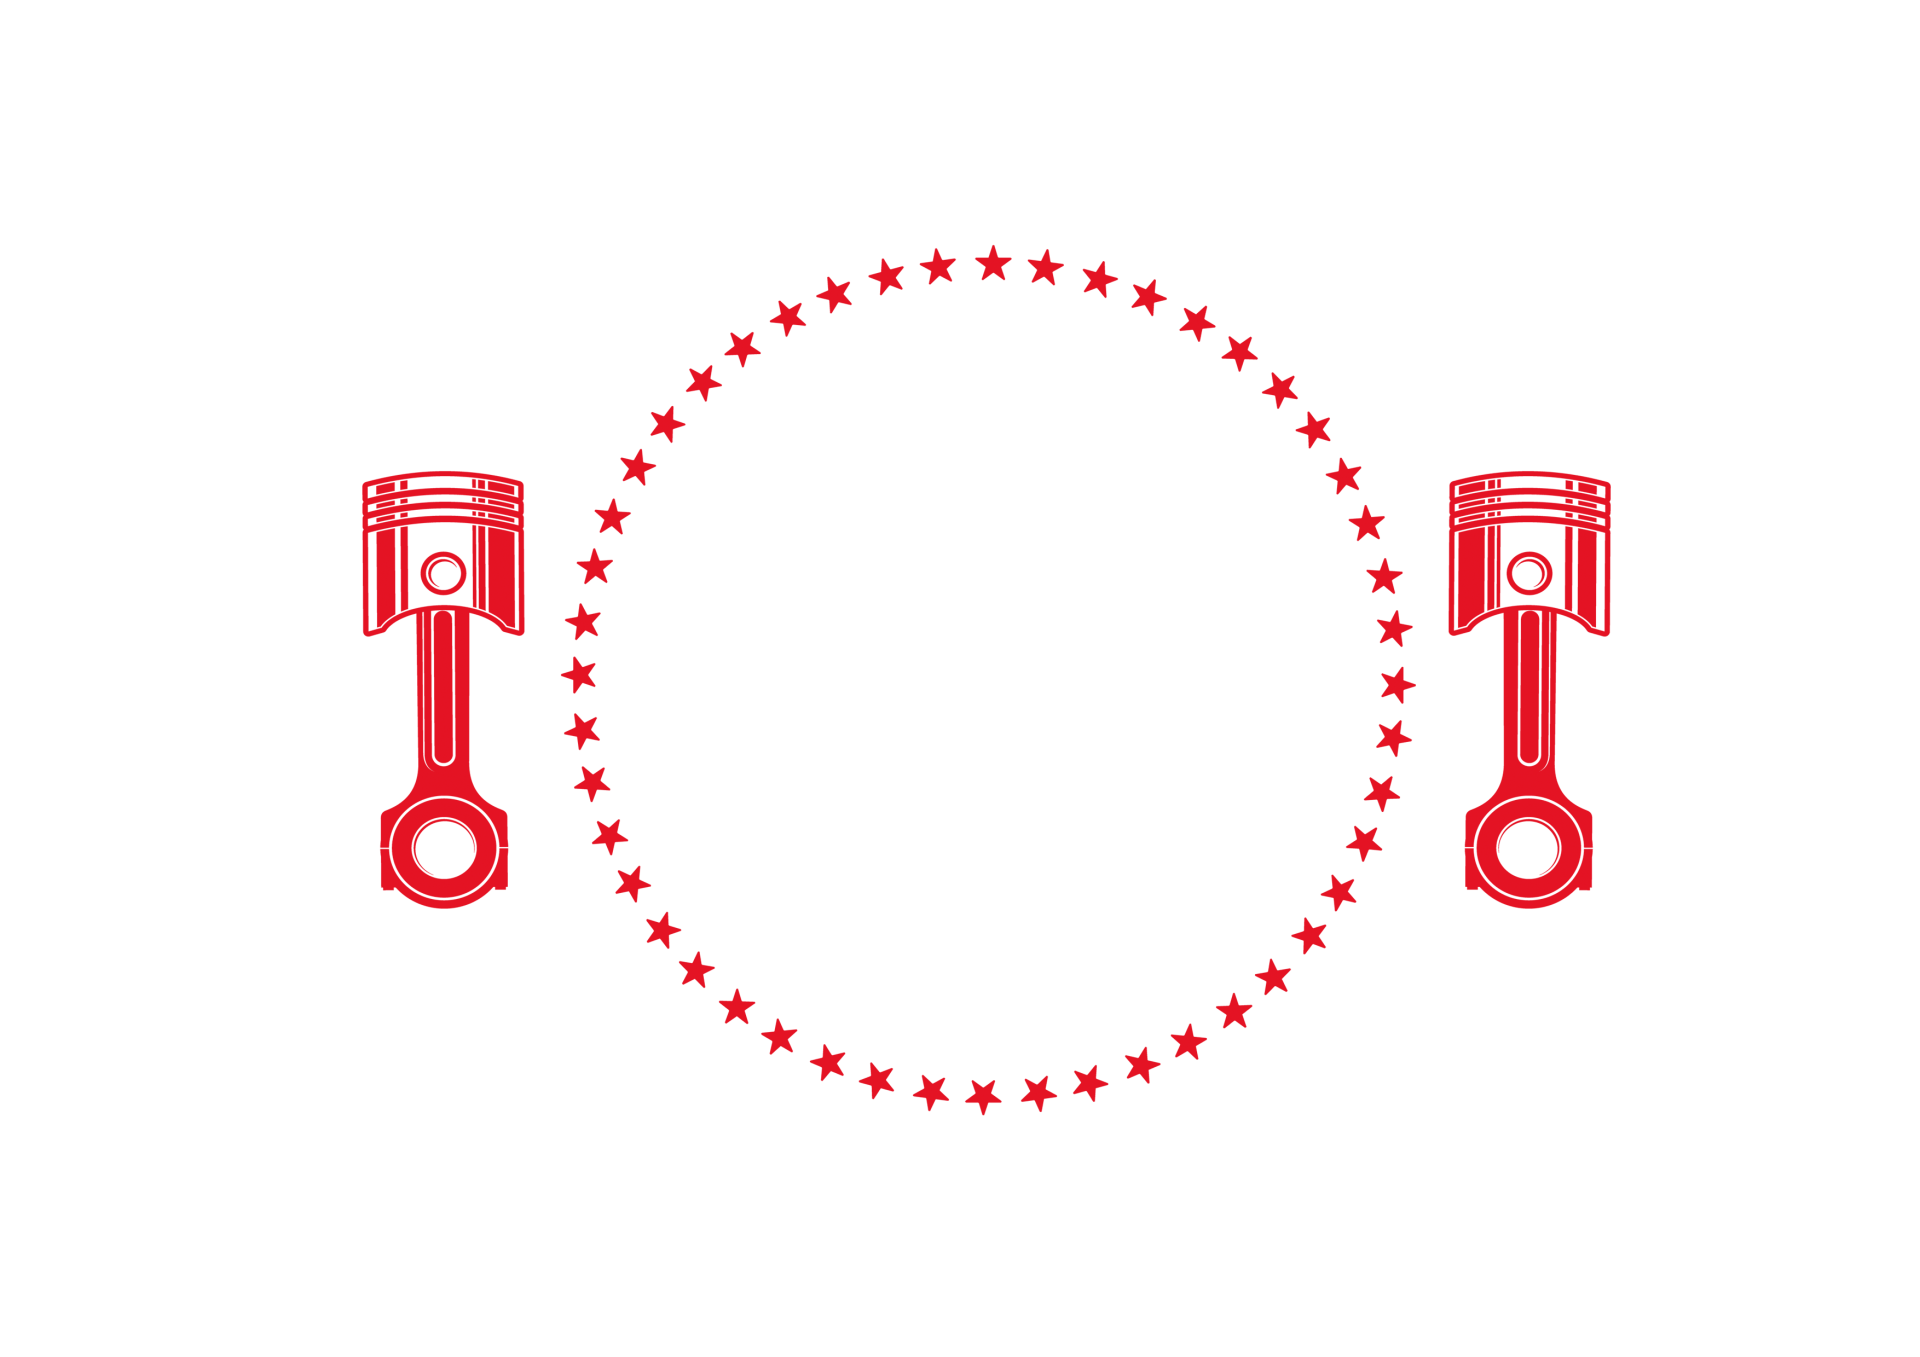 طهران کمپانی